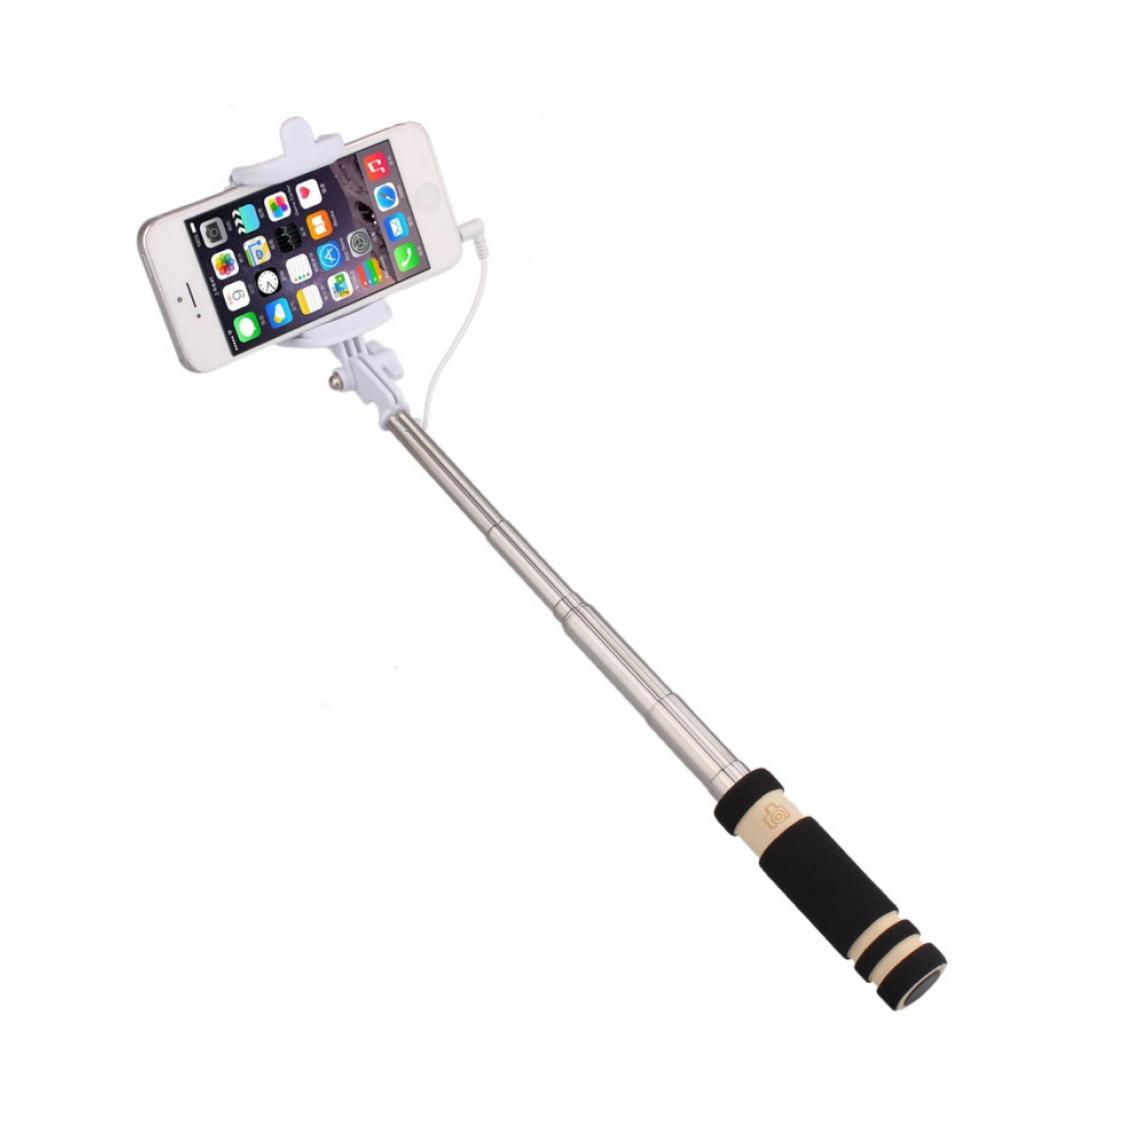 Shot - Mini Perche Selfie pour HUAWEI P smart Z Smartphone avec Cable Jack Selfie Stick Android IOS Reglable Bouton Photo (NOIR) - Autres accessoires smartphone